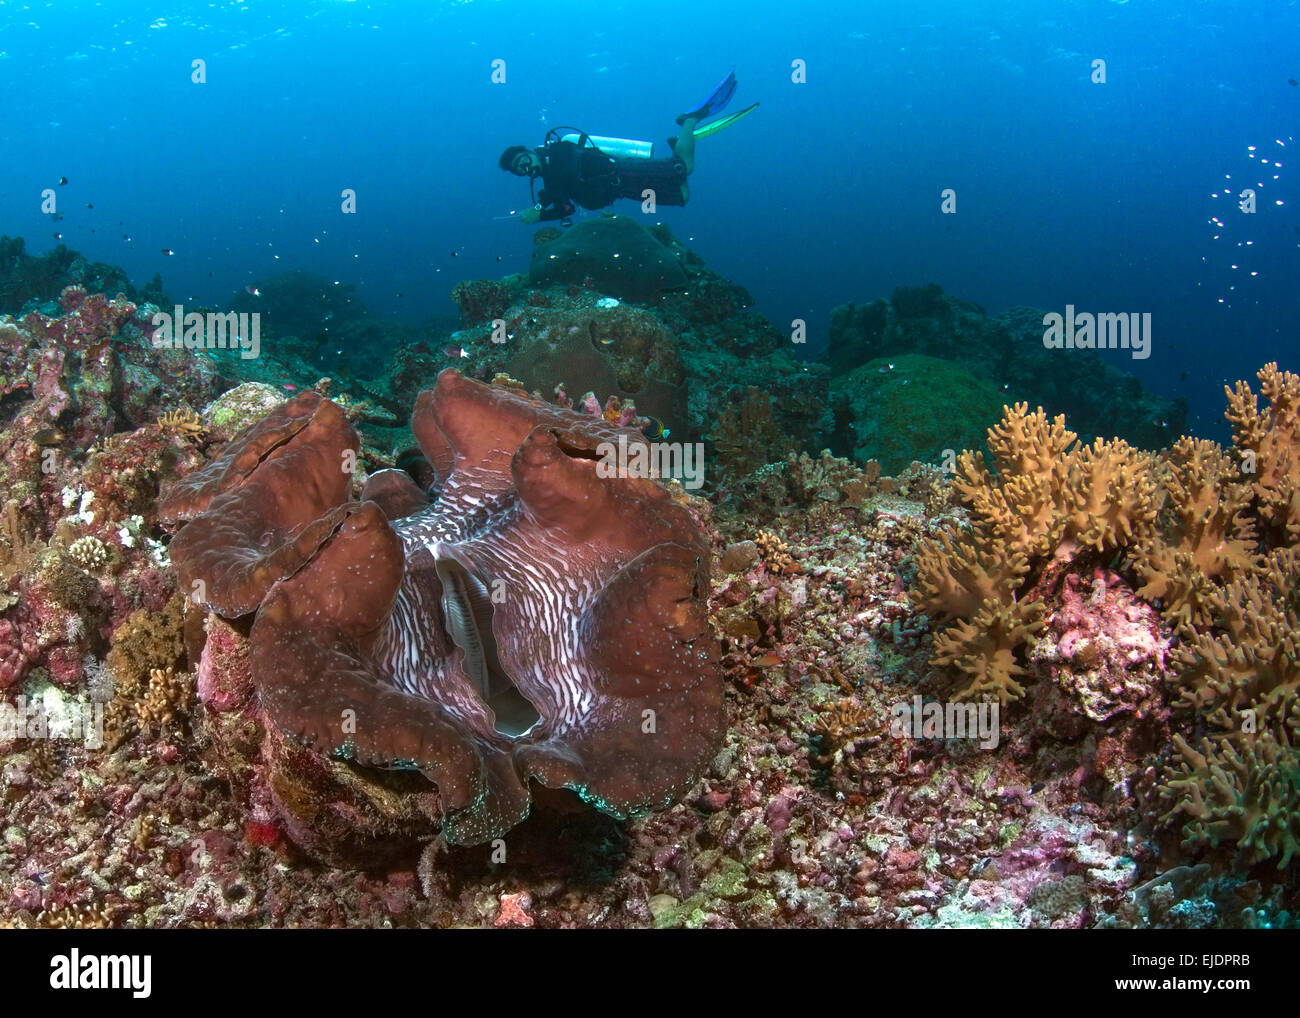 Scuba Diver schwebt über roten Riesen Muschel. Spratly-Inseln, South China Sea. Juli 2014. Stockfoto